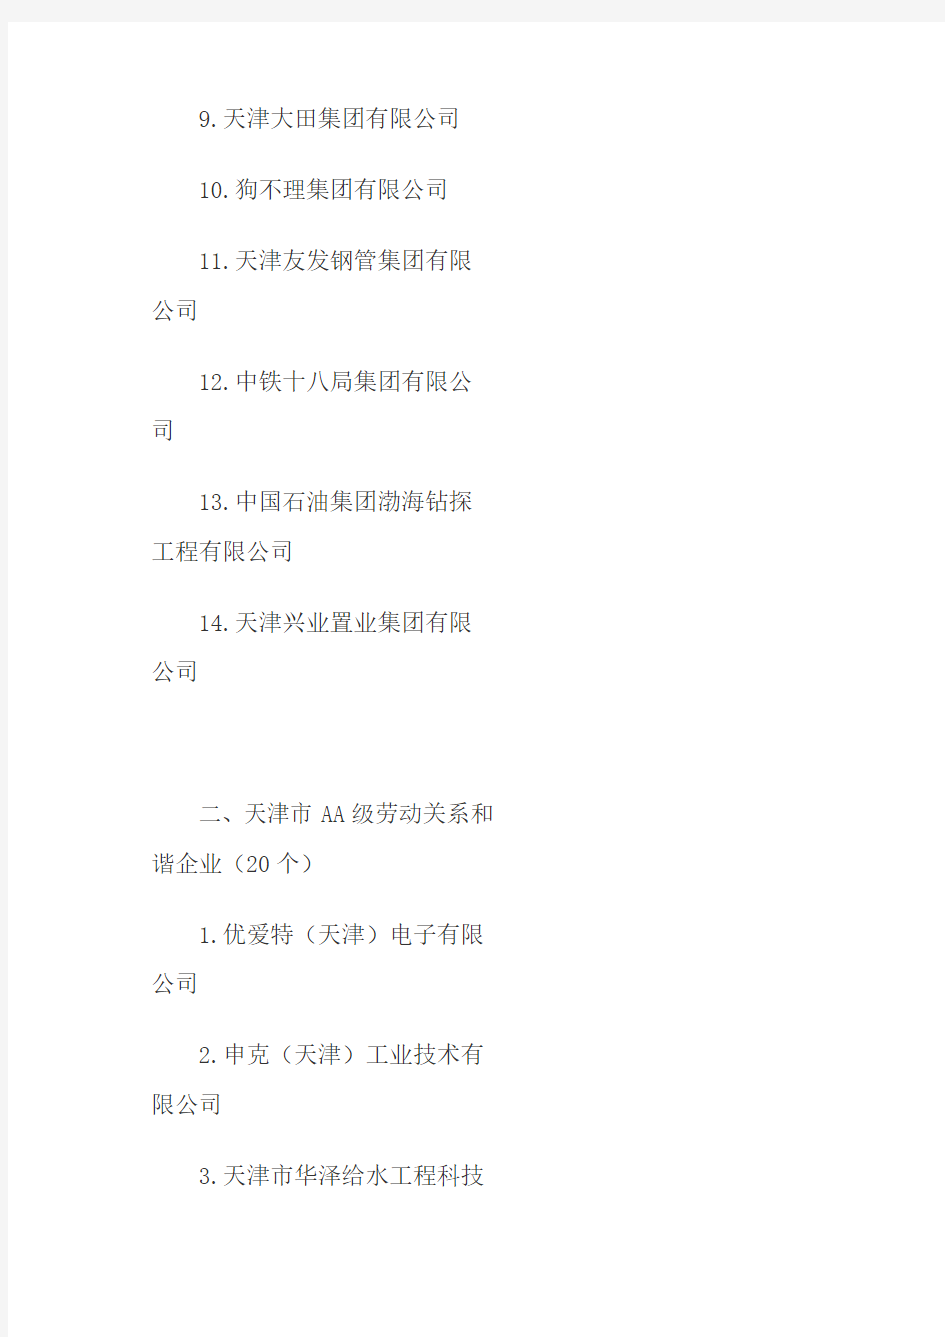 天津市知名企业名单